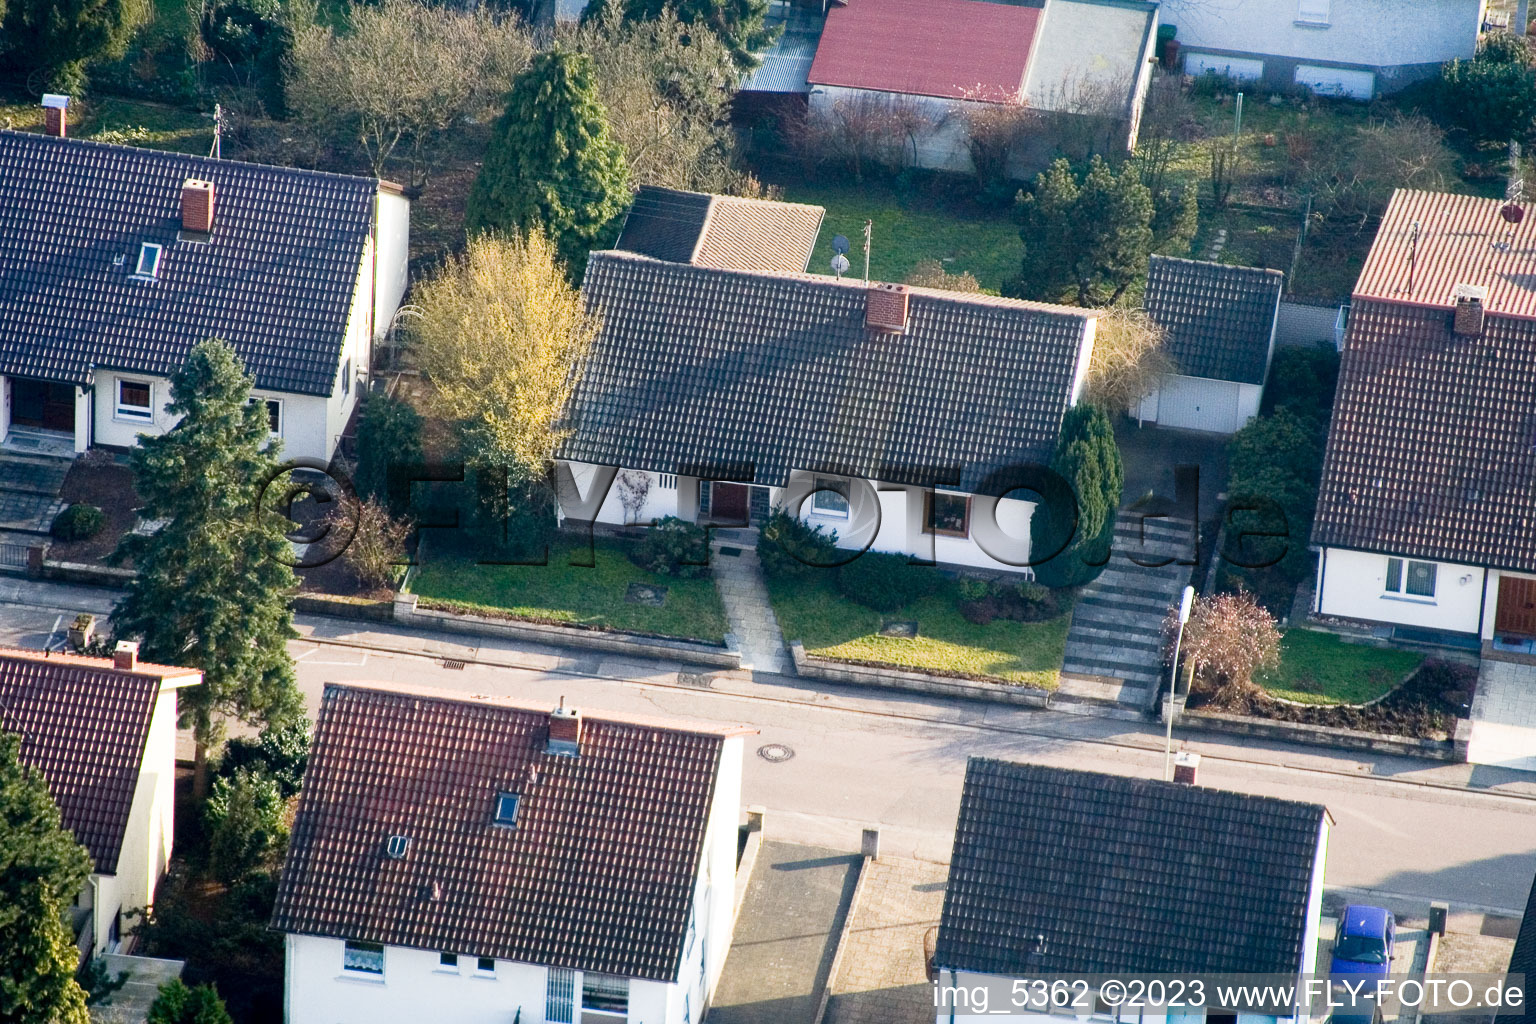 Kandel, Zeppelinstr im Bundesland Rheinland-Pfalz, Deutschland von der Drohne aus gesehen